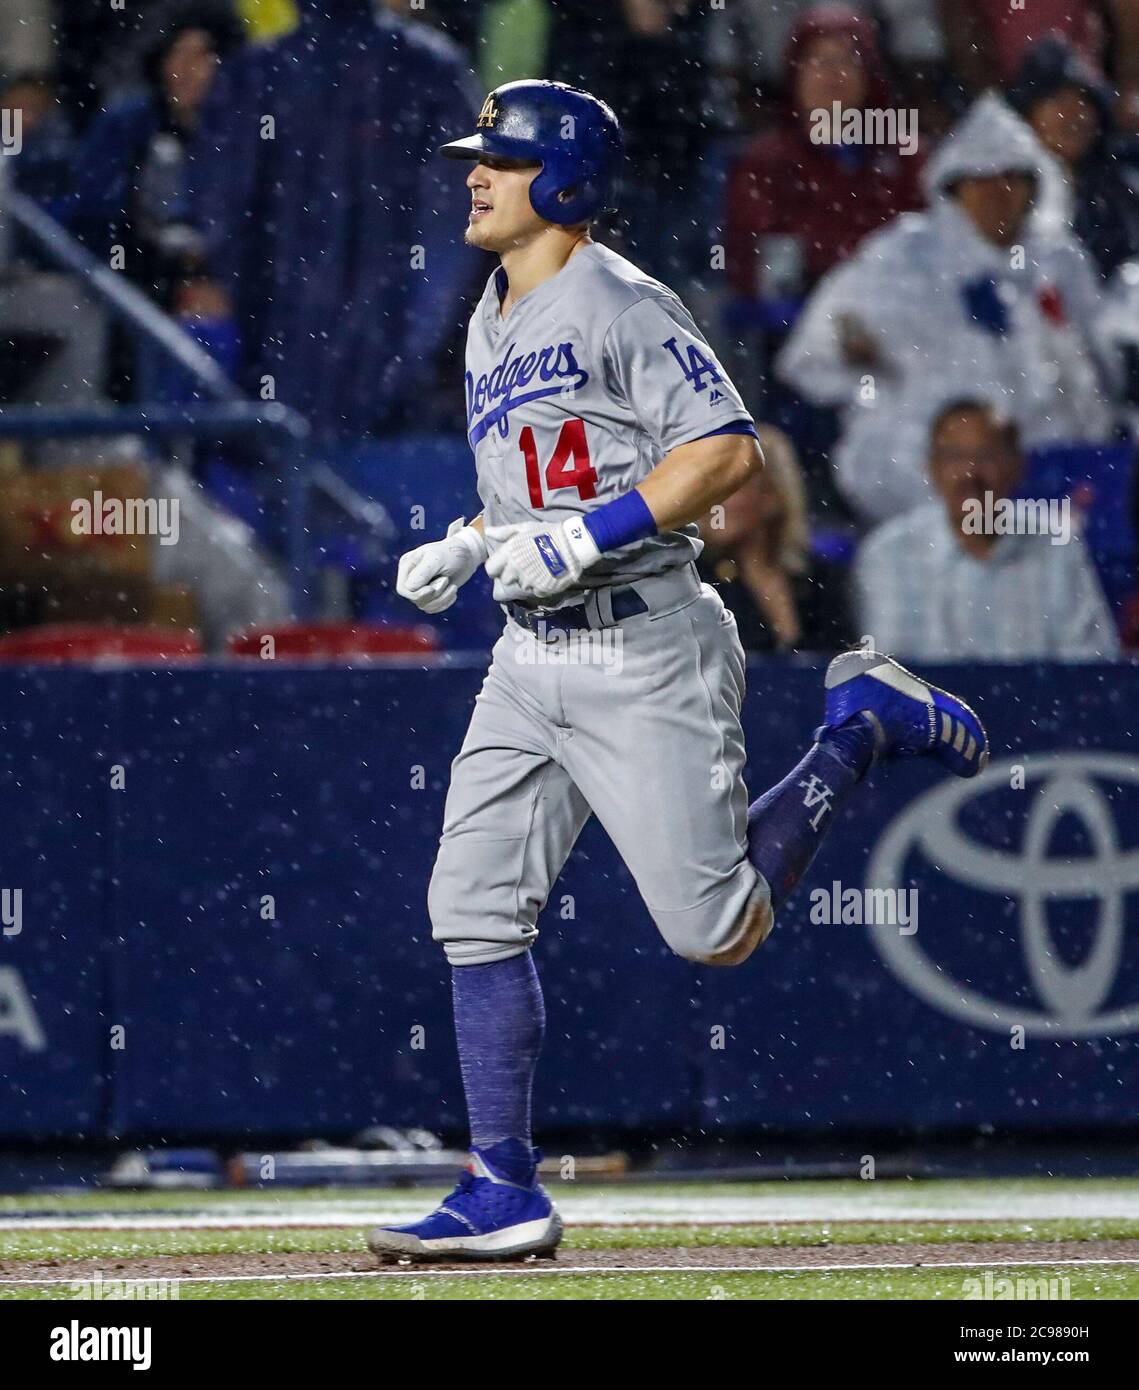 Enrique Hernandez de los Dodgers conecta cuadrangular, durante el partido de beisbol de los Dodgers de Los Angeles contra Padres de San Diego, durante el primer juego de la serie las Ligas Mayores del Beisbol en Monterrey, Mexico el 4 de Mayo 2018.(Photo: Luis Gutierrez) Stock Photo